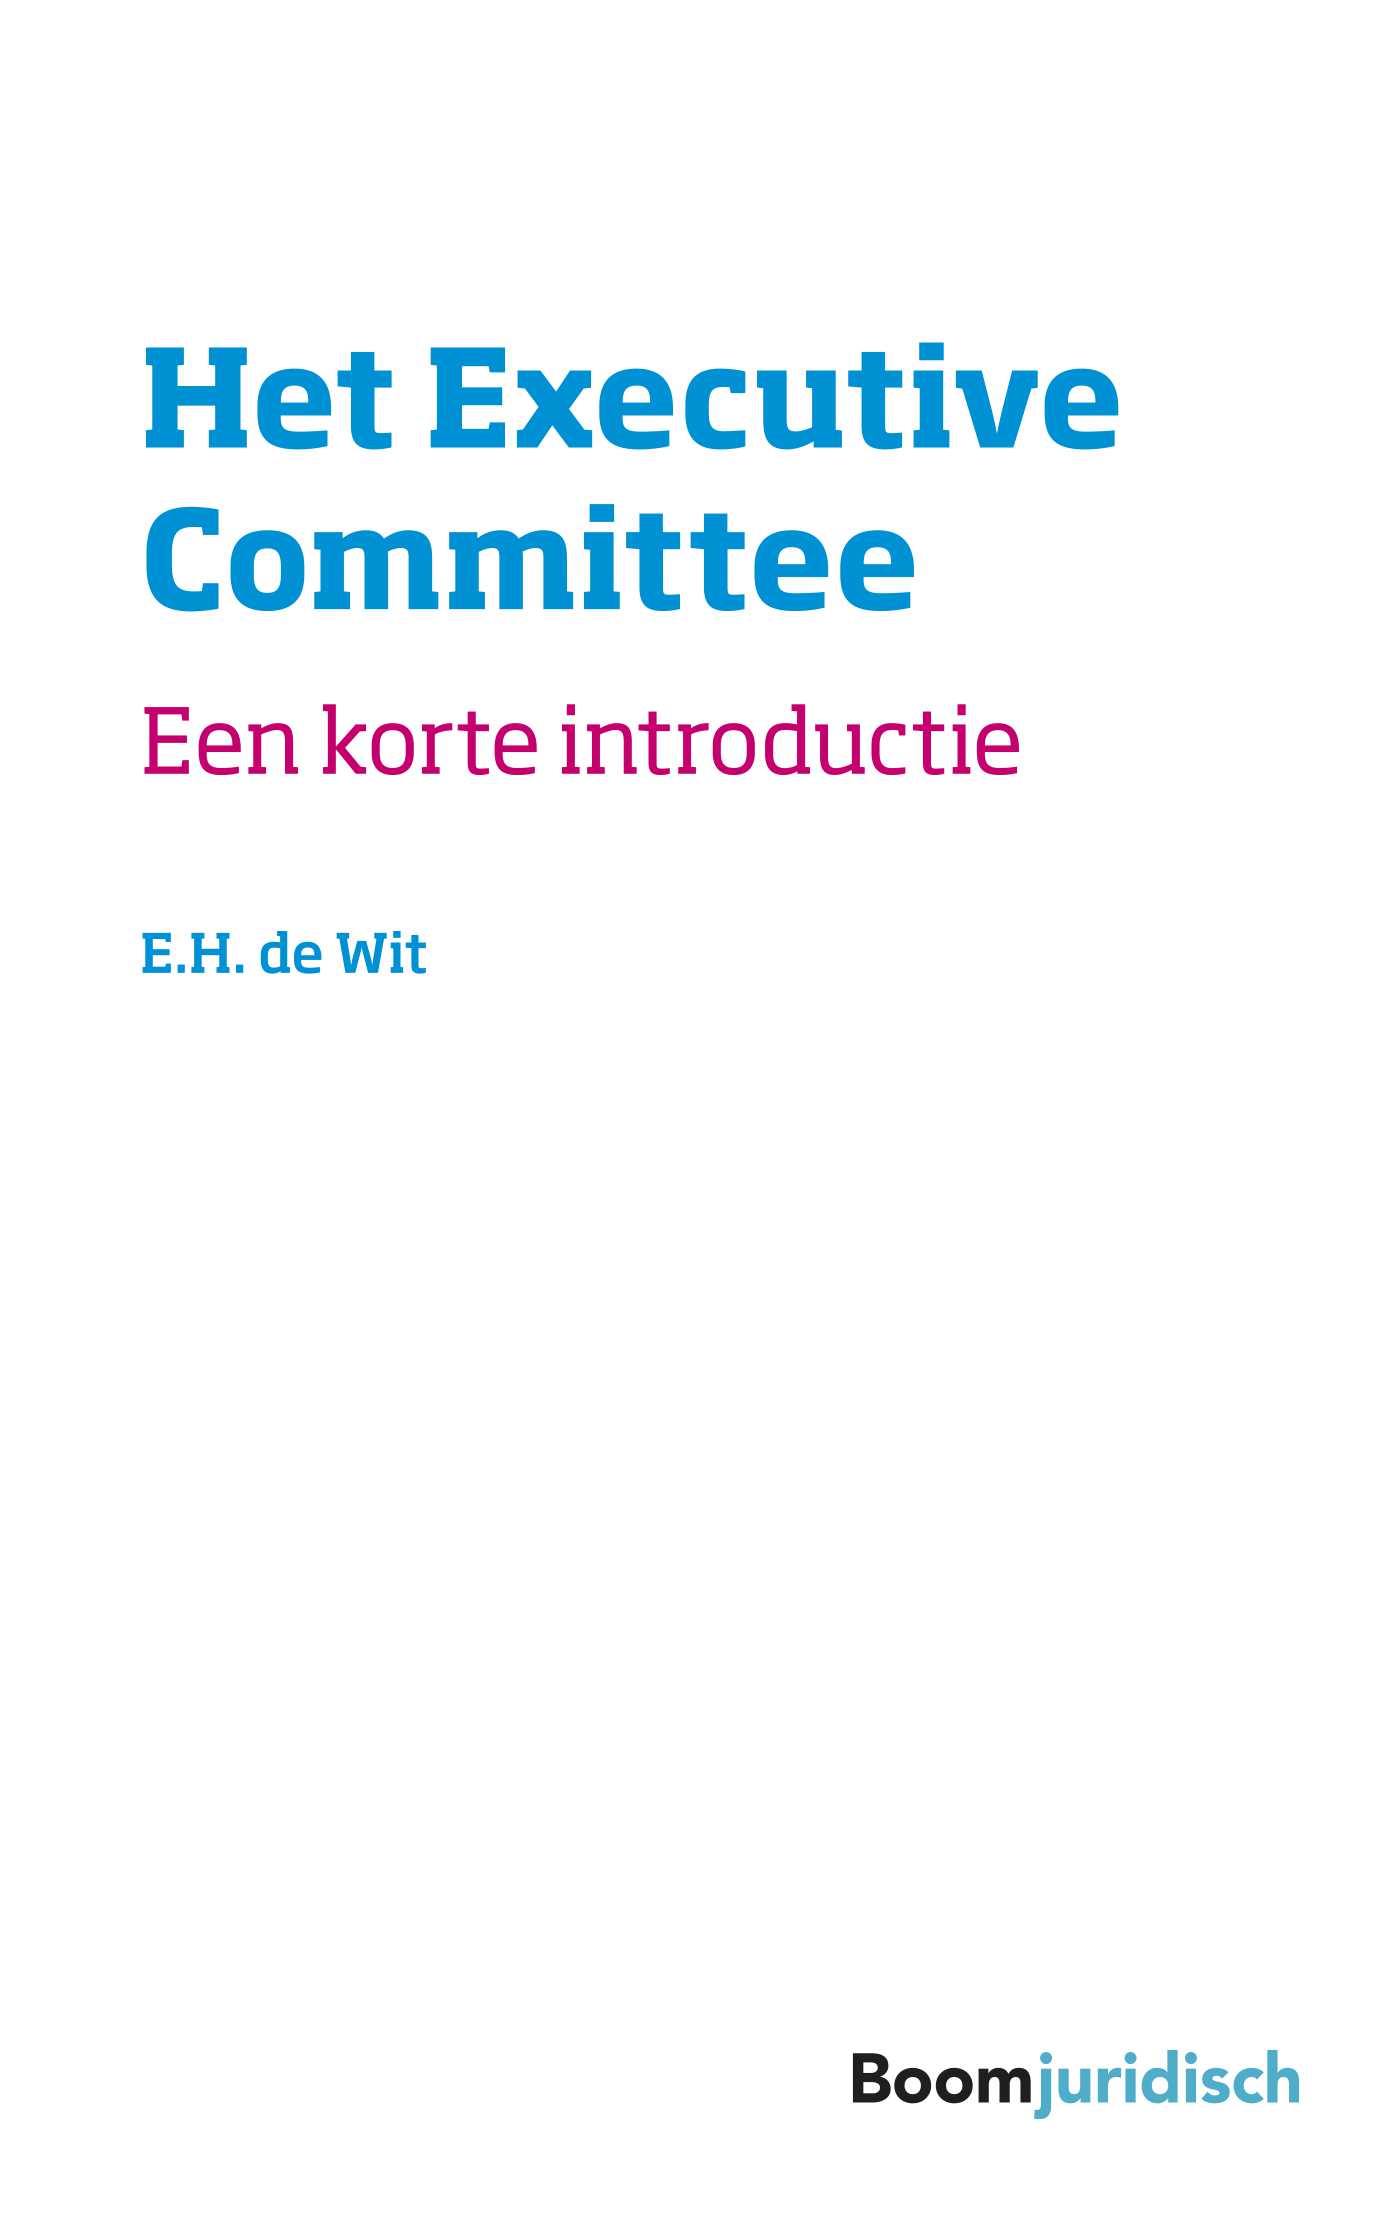 Het Executive Committee (Ebook)